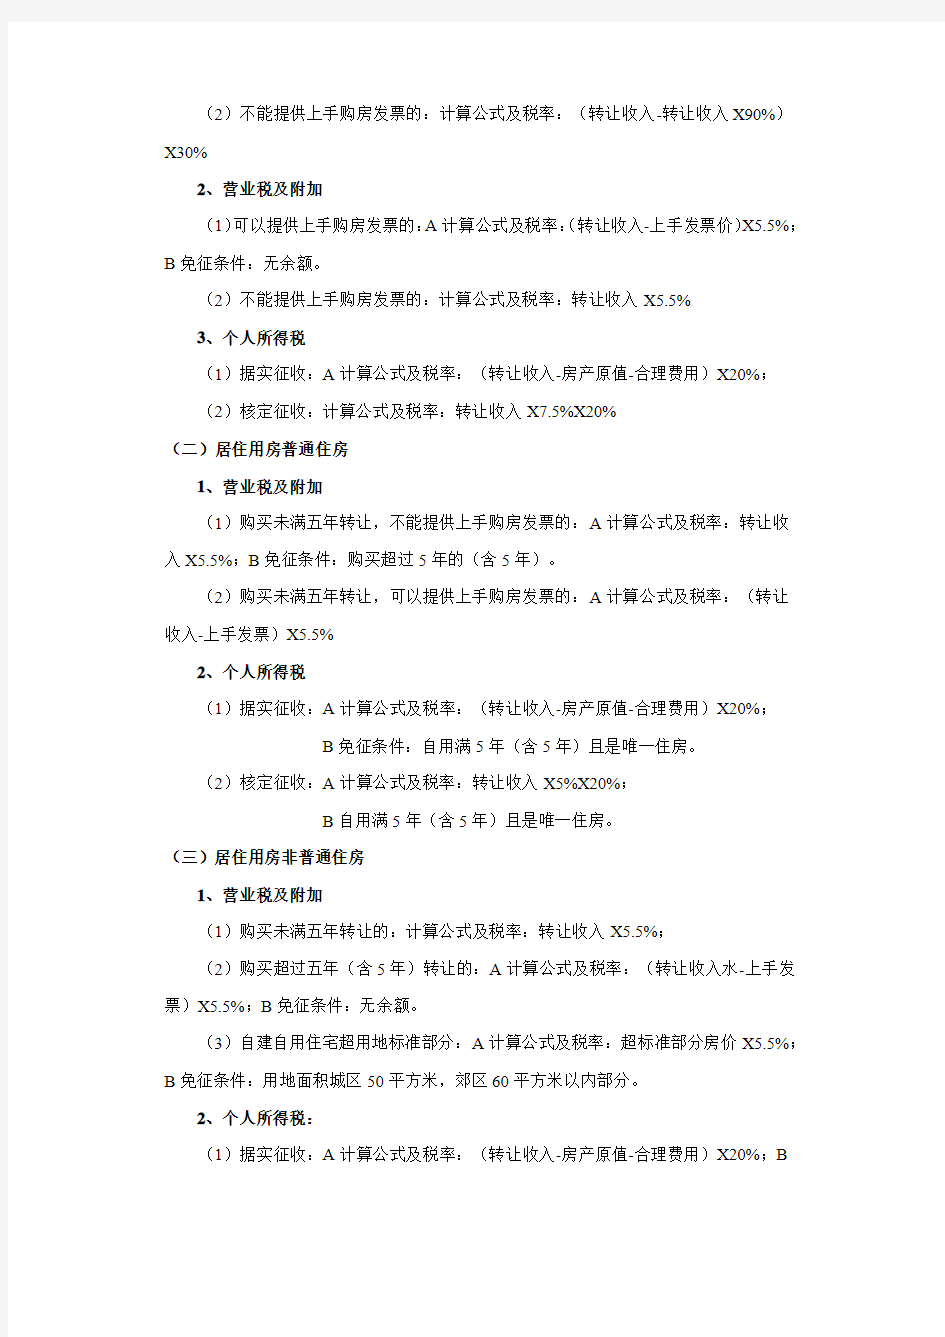 广州市房地产交易税费一览表及普通住房标准